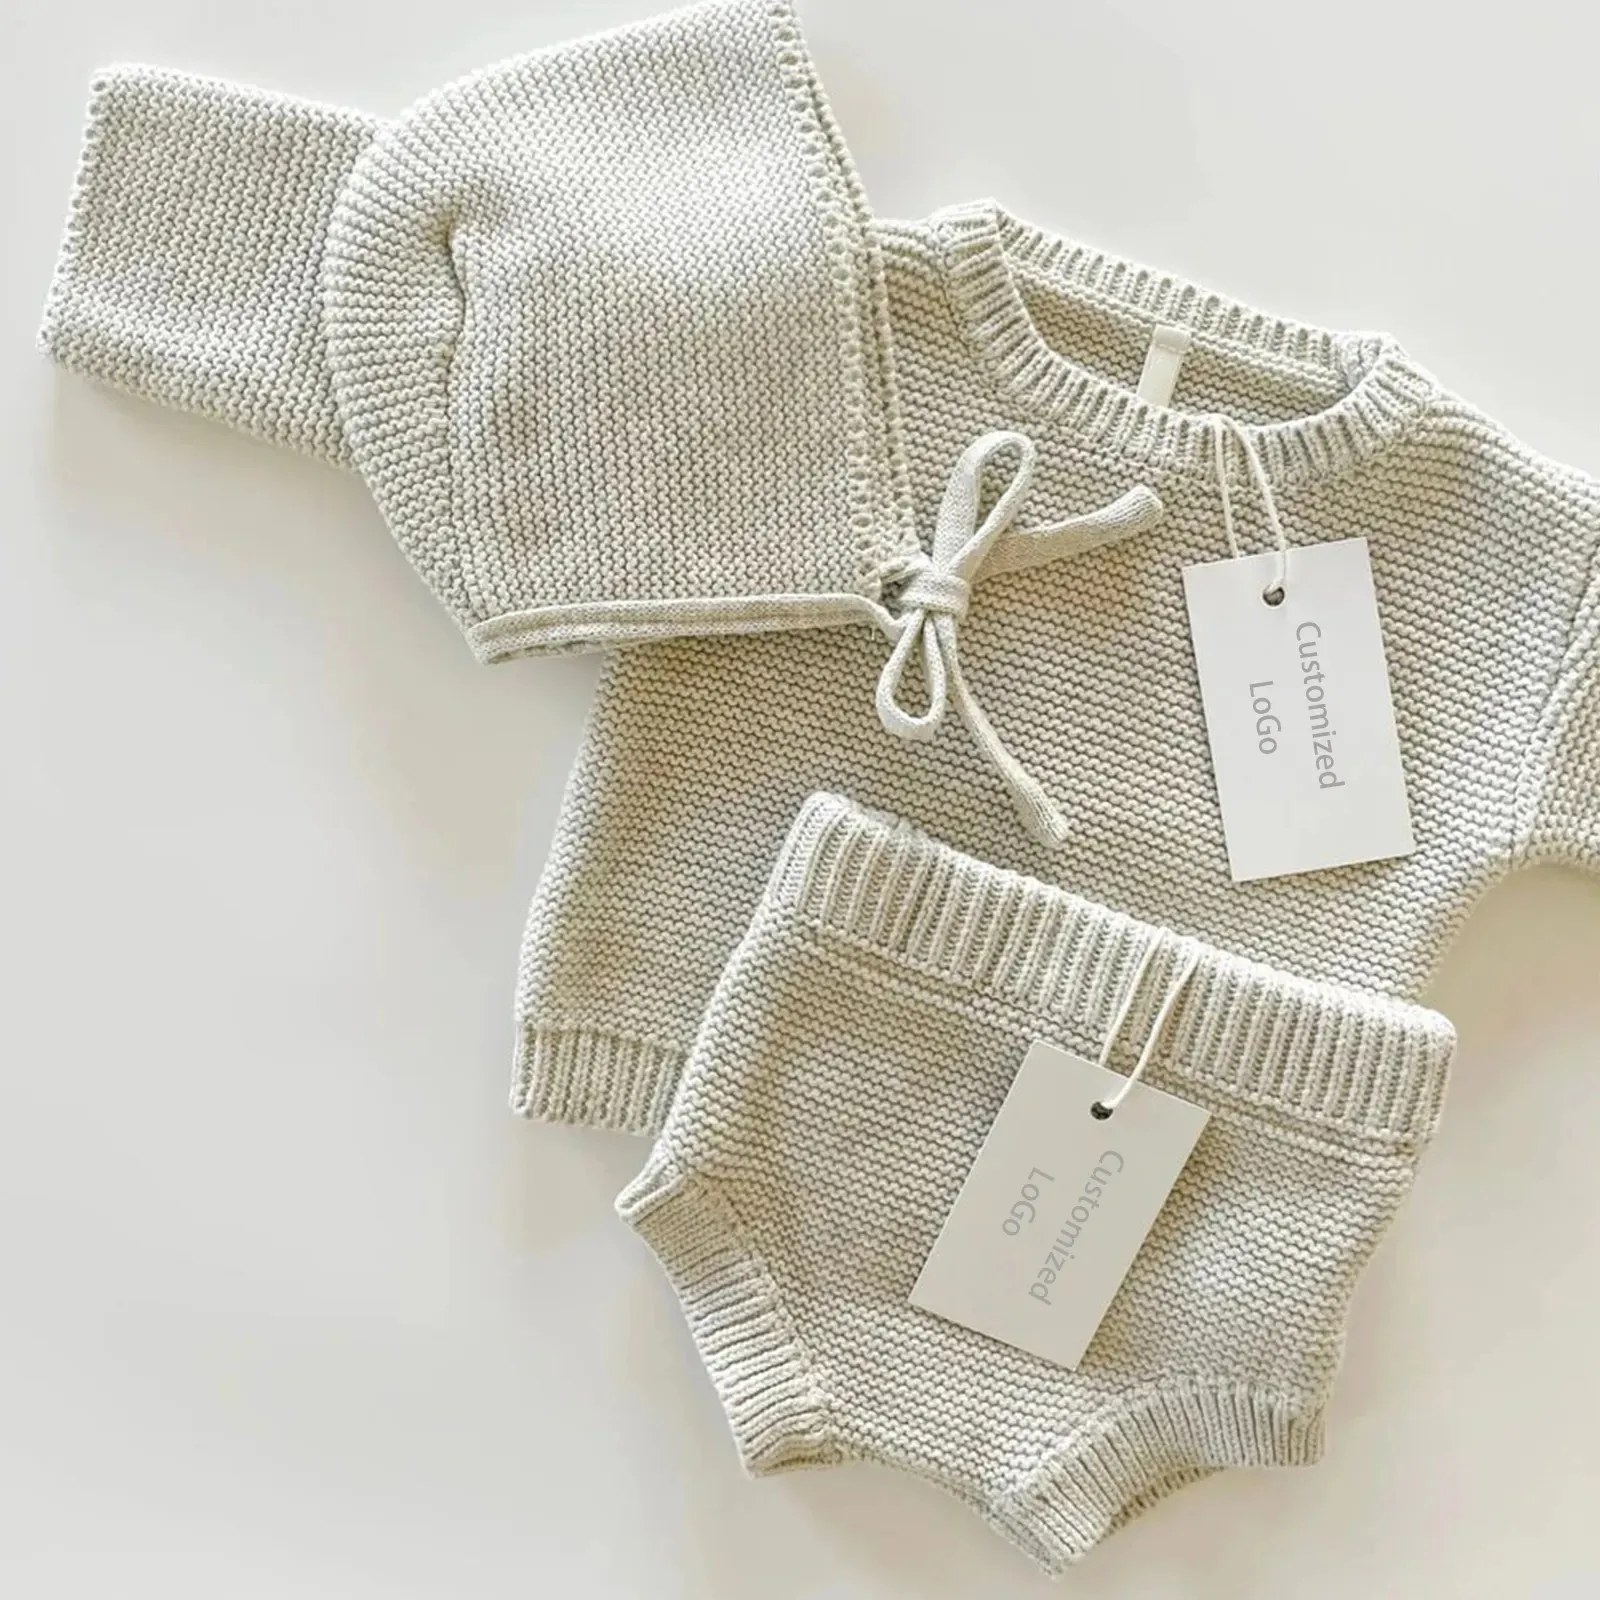 Completo 100% in cotone biologico lavorato a maglia maglia maglia maglia maglione bambino in tre pezzi vestiti in maglia Set abbigliamento per bambini